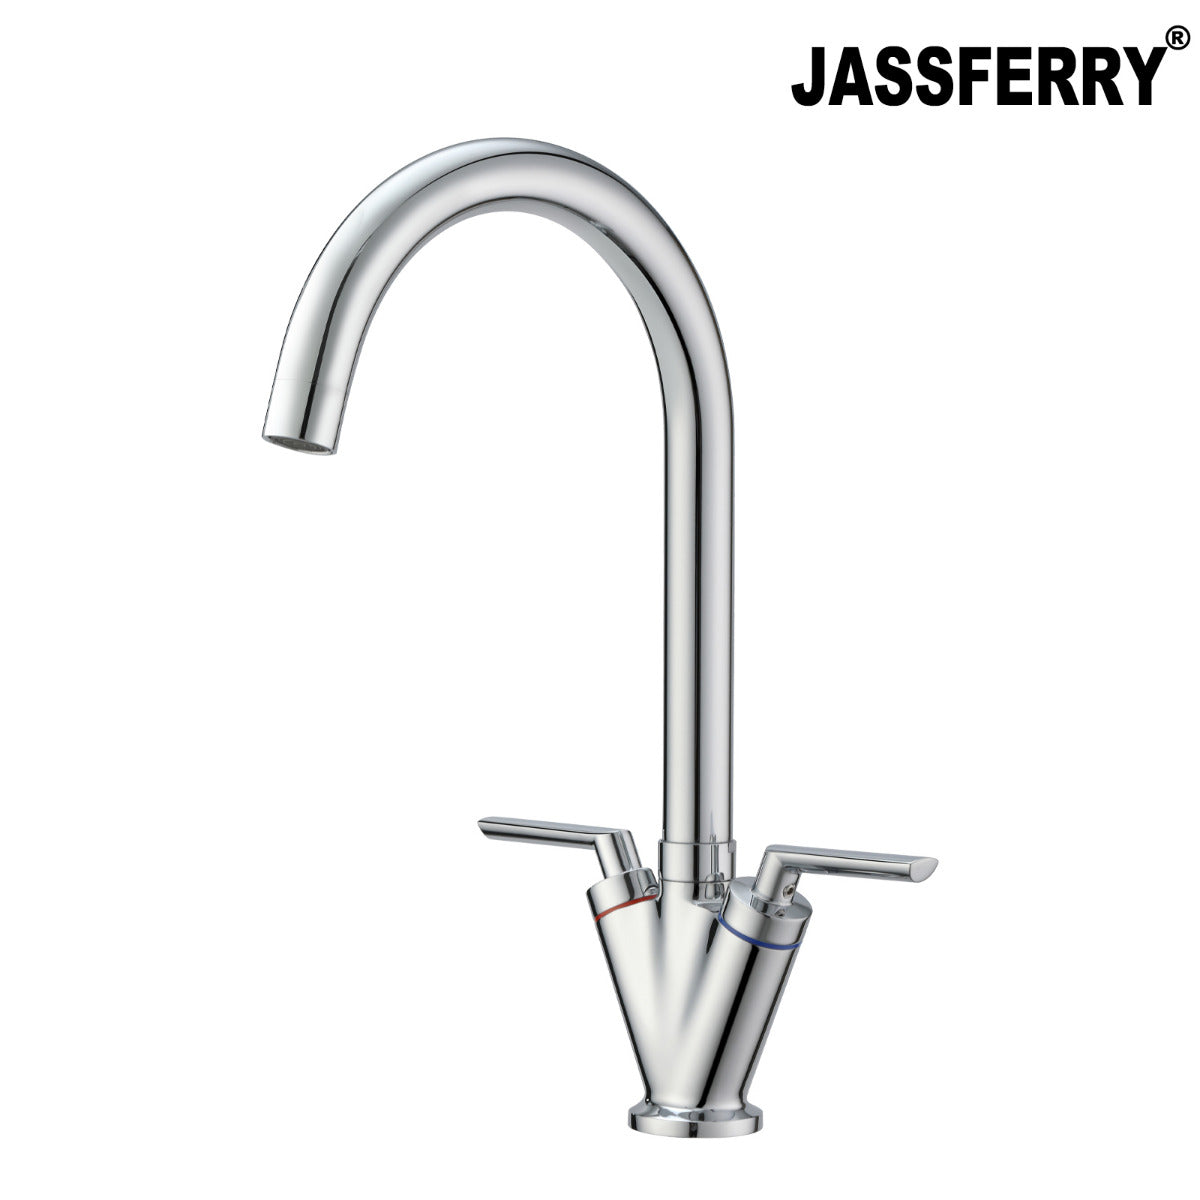 JassferryJASSFERRY Brass Mono Kitchen Sink Tap Modern Mixer Twin Lever Swivel SpoutKitchen taps